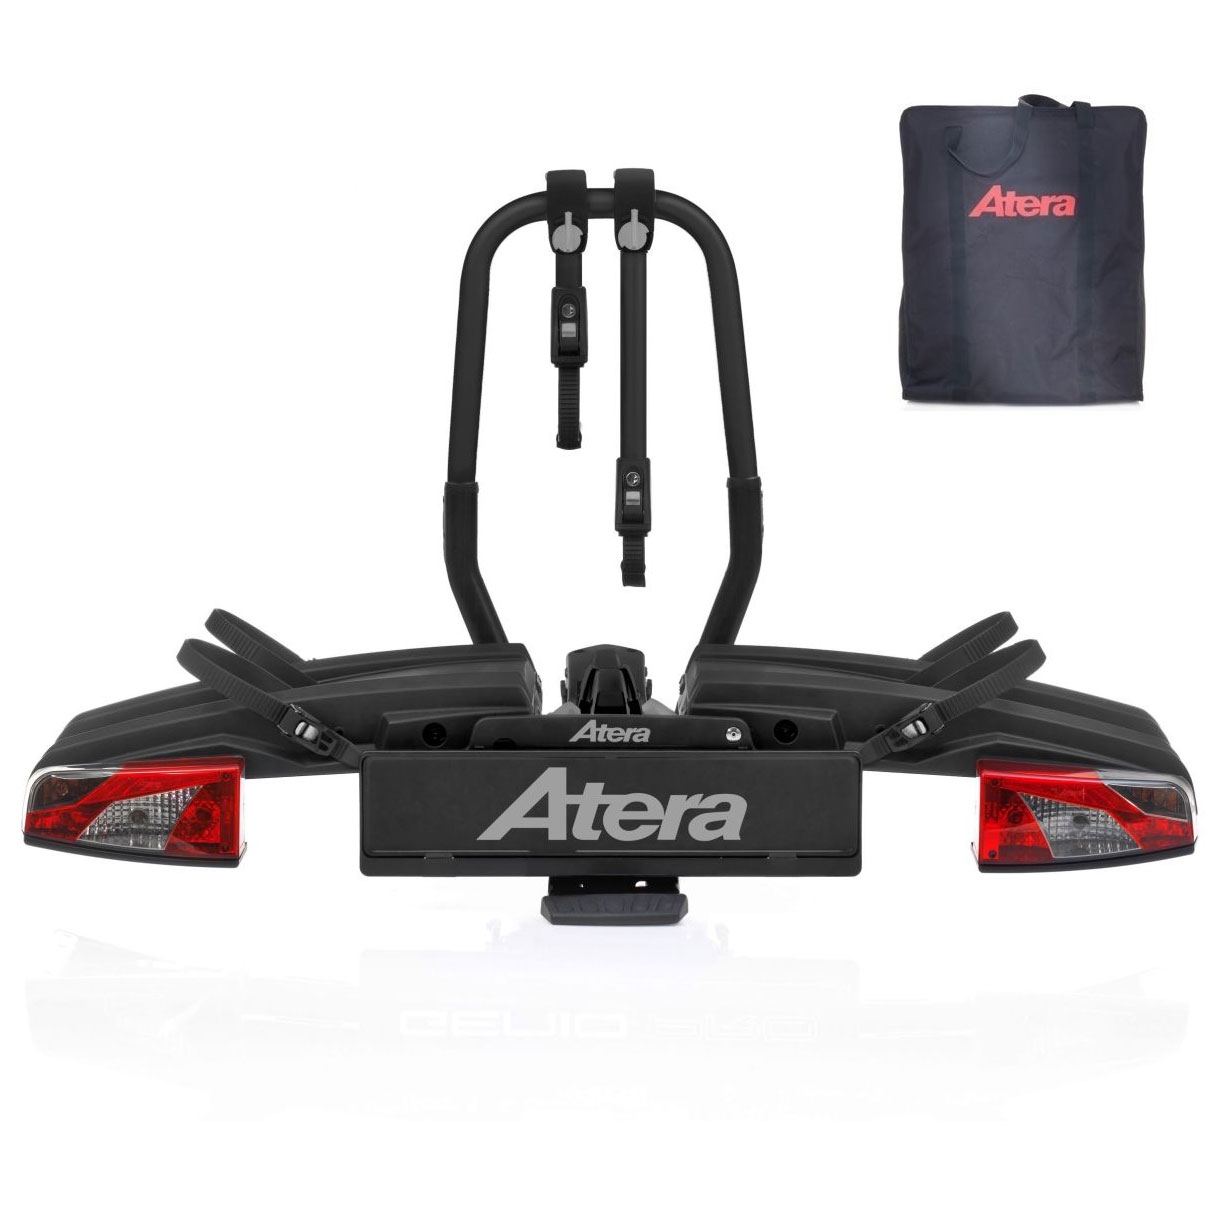 ATERA GENIO PRO Advanced 022785 Fahrradtraeger 2er Black Edition faltbar inkl- Tasche- Fahrradtraeger fuer die Anhaengerkupplung von ATERA aus dem Allgaeu